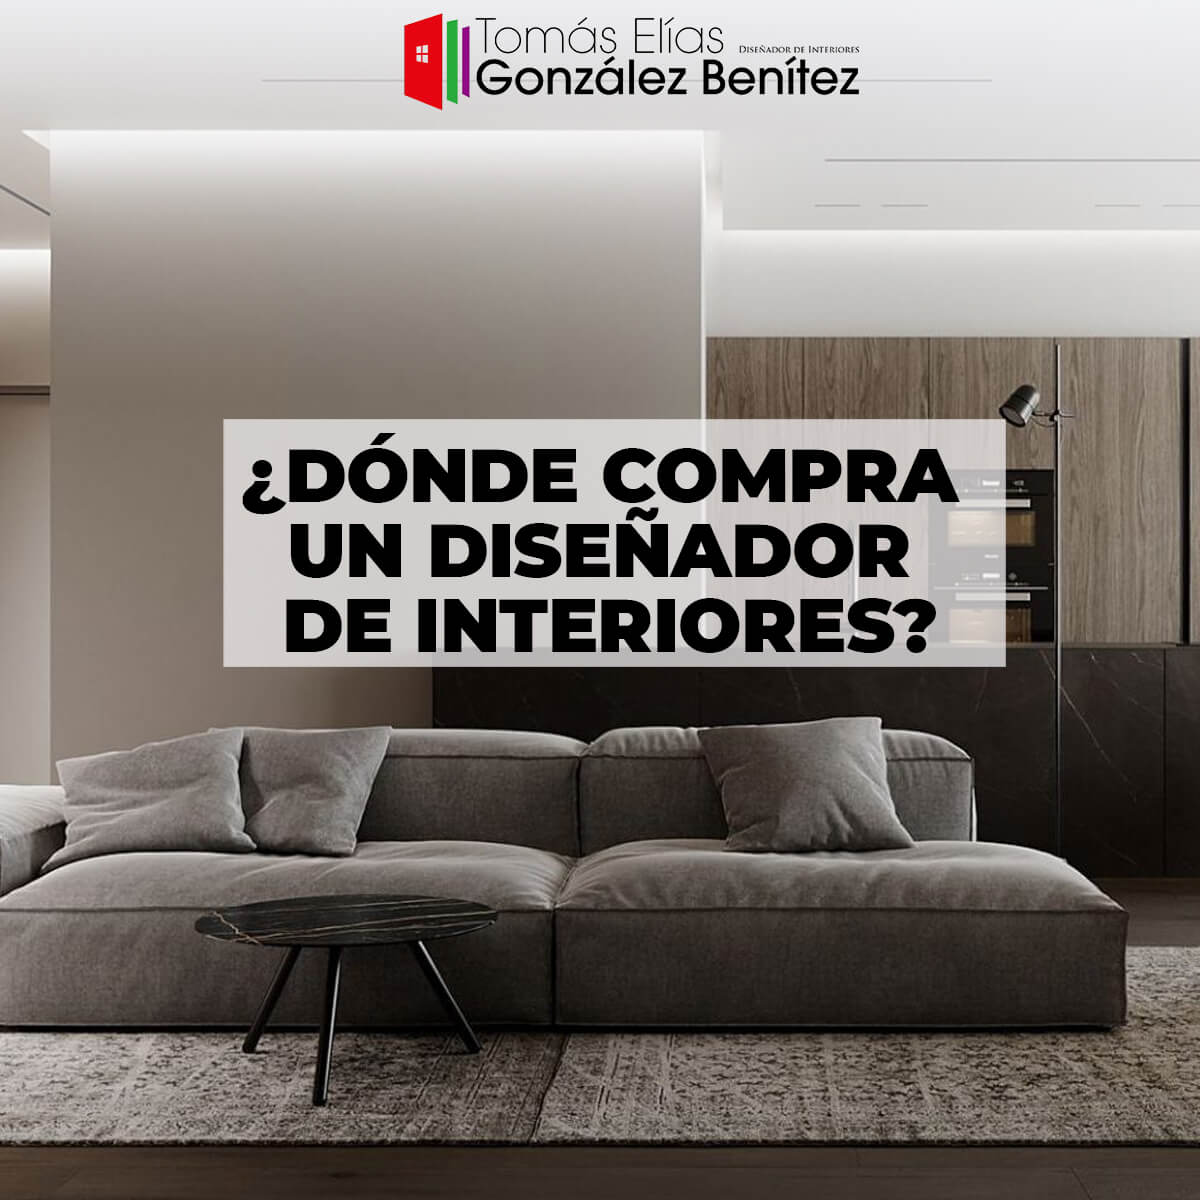 Tomás Elías González Benítez - Dónde compra un diseñador de interiores